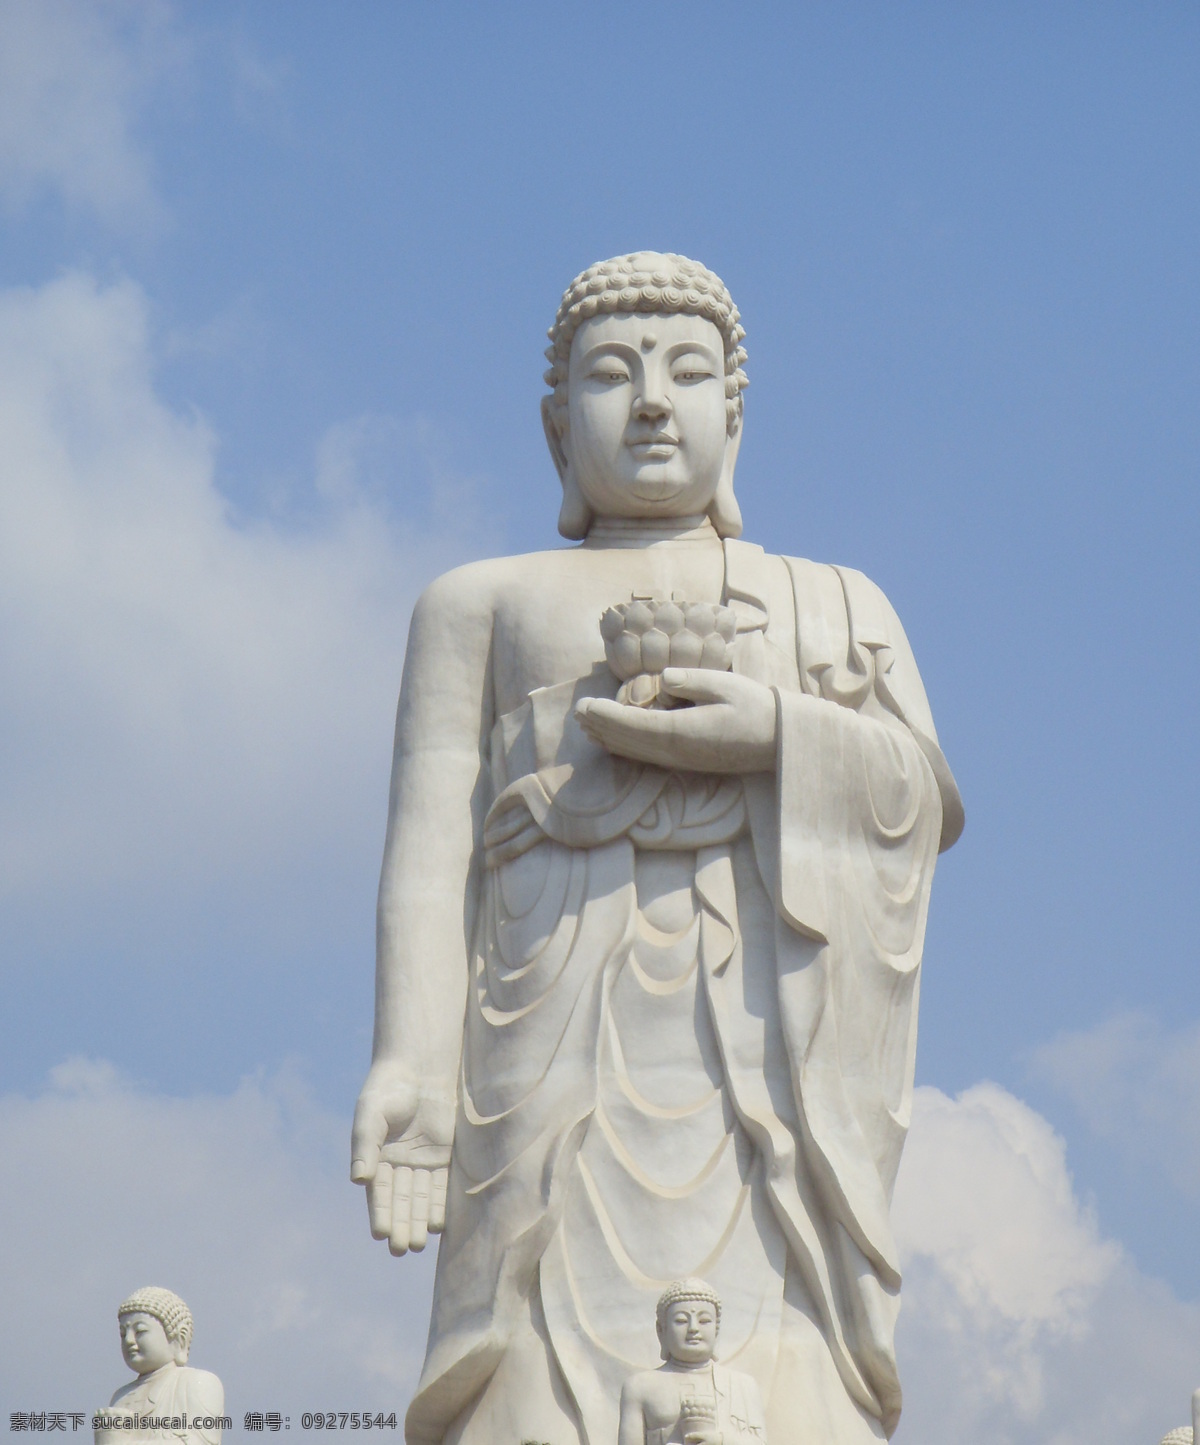 山东 庆云 海岛 金山寺 文化艺术 宗教信仰 释迦摩尼佛像